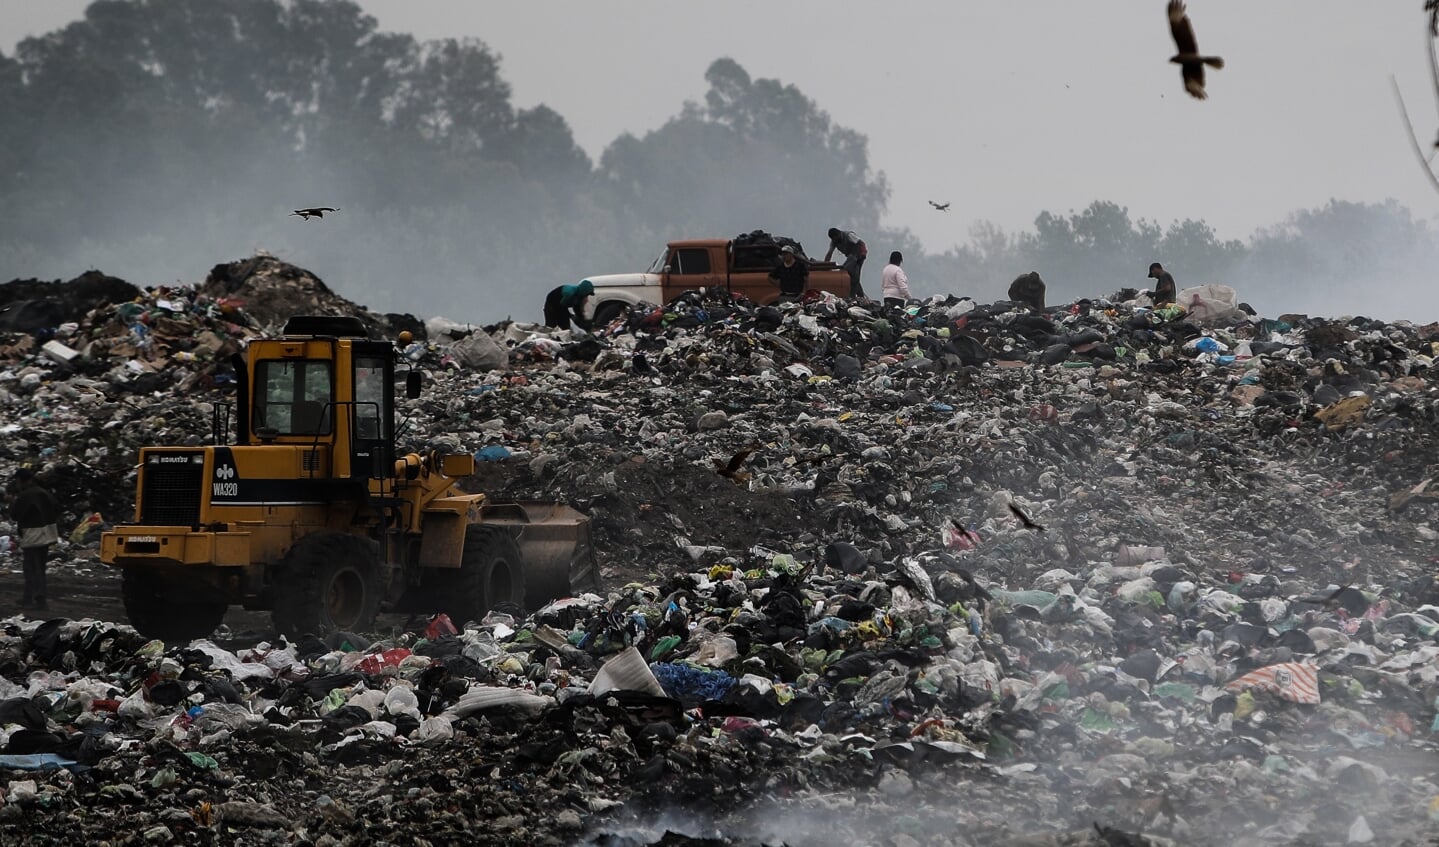 De grootste open vuilnisbelt van Buenos Aires. Satellietonderzoek laat zien dat vuilnisbelten bij grote steden soms veel methaan uitstoten.